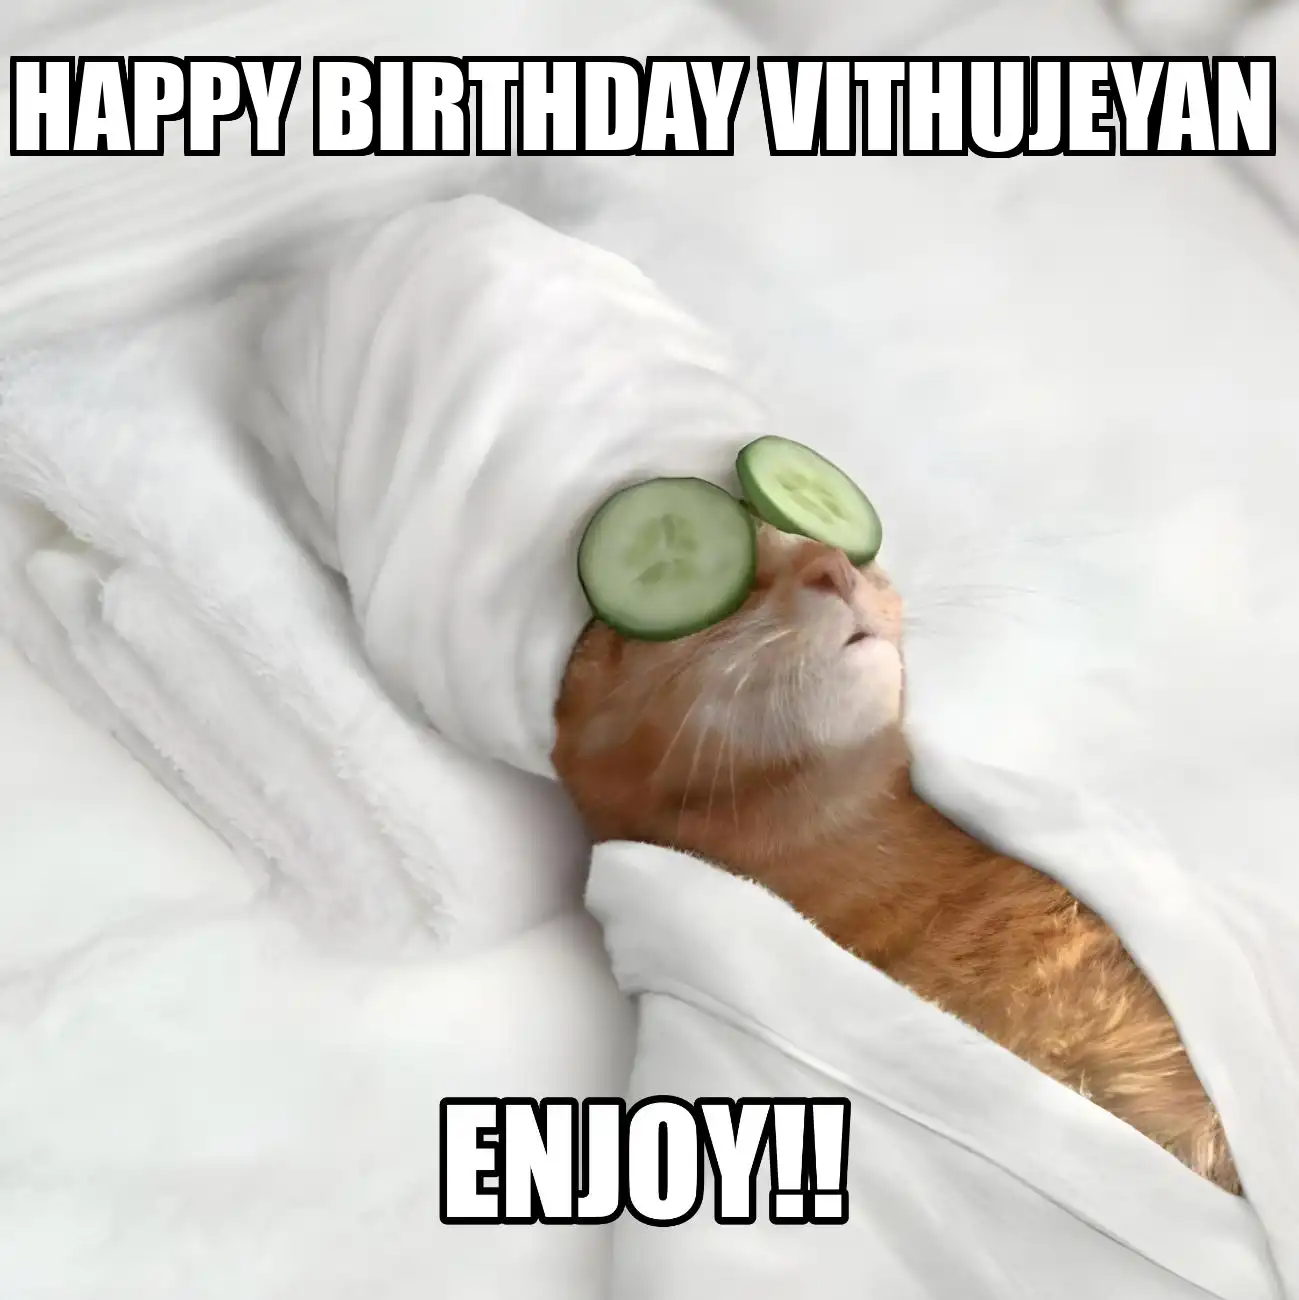 Happy Birthday Vithujeyan Enjoy Cat Meme